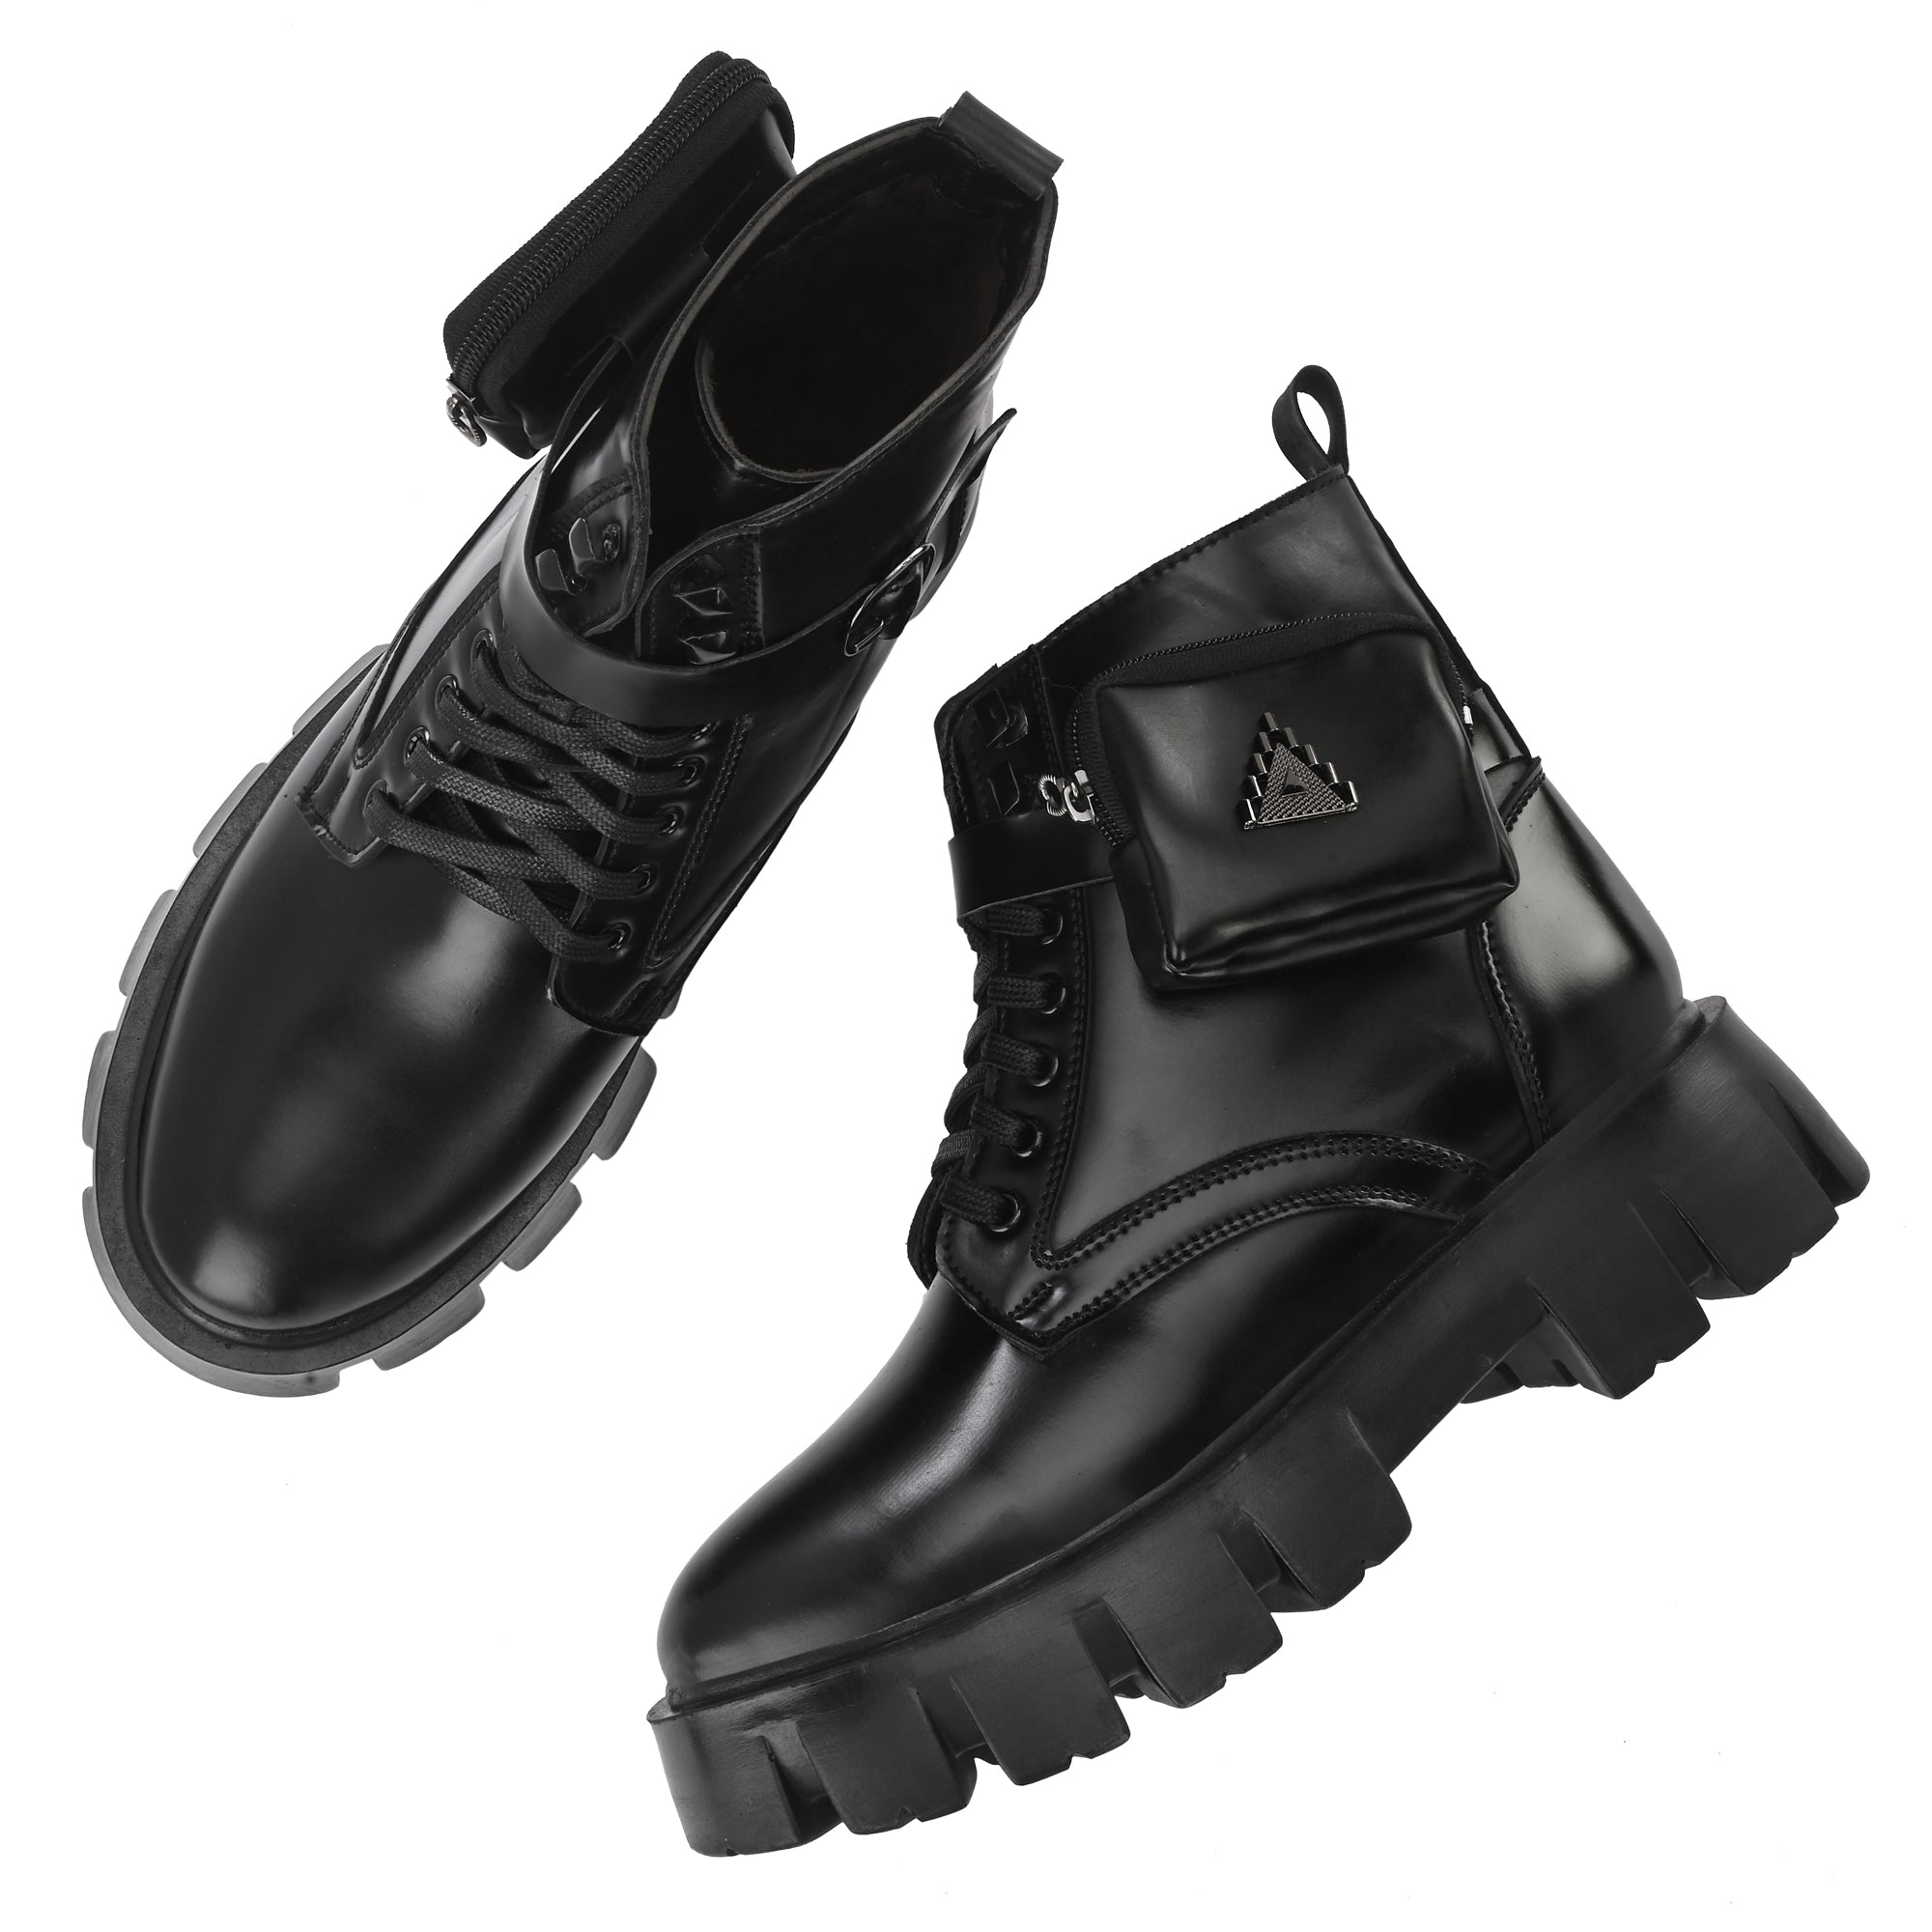 attitudist-matte-black-stylish-side-pocket-ankle-boots-for-men